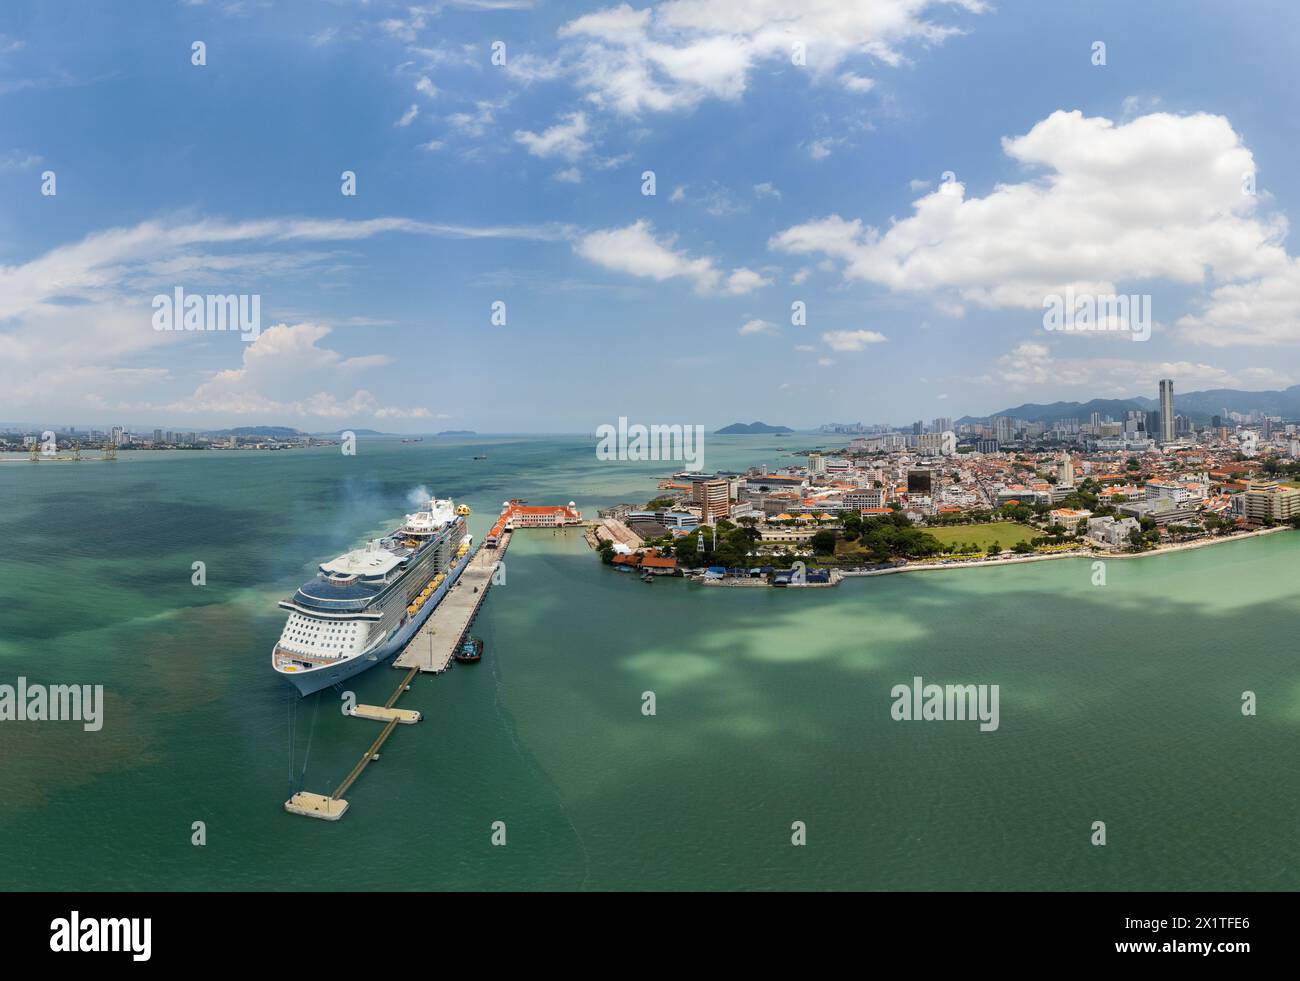 Georgetown, Malaisie - 13 août 2022 : vue aérienne d'un grand bateau de croisière ancré au terminal de croisière Swettenham Pier dans la ville historique de Georgetown Banque D'Images